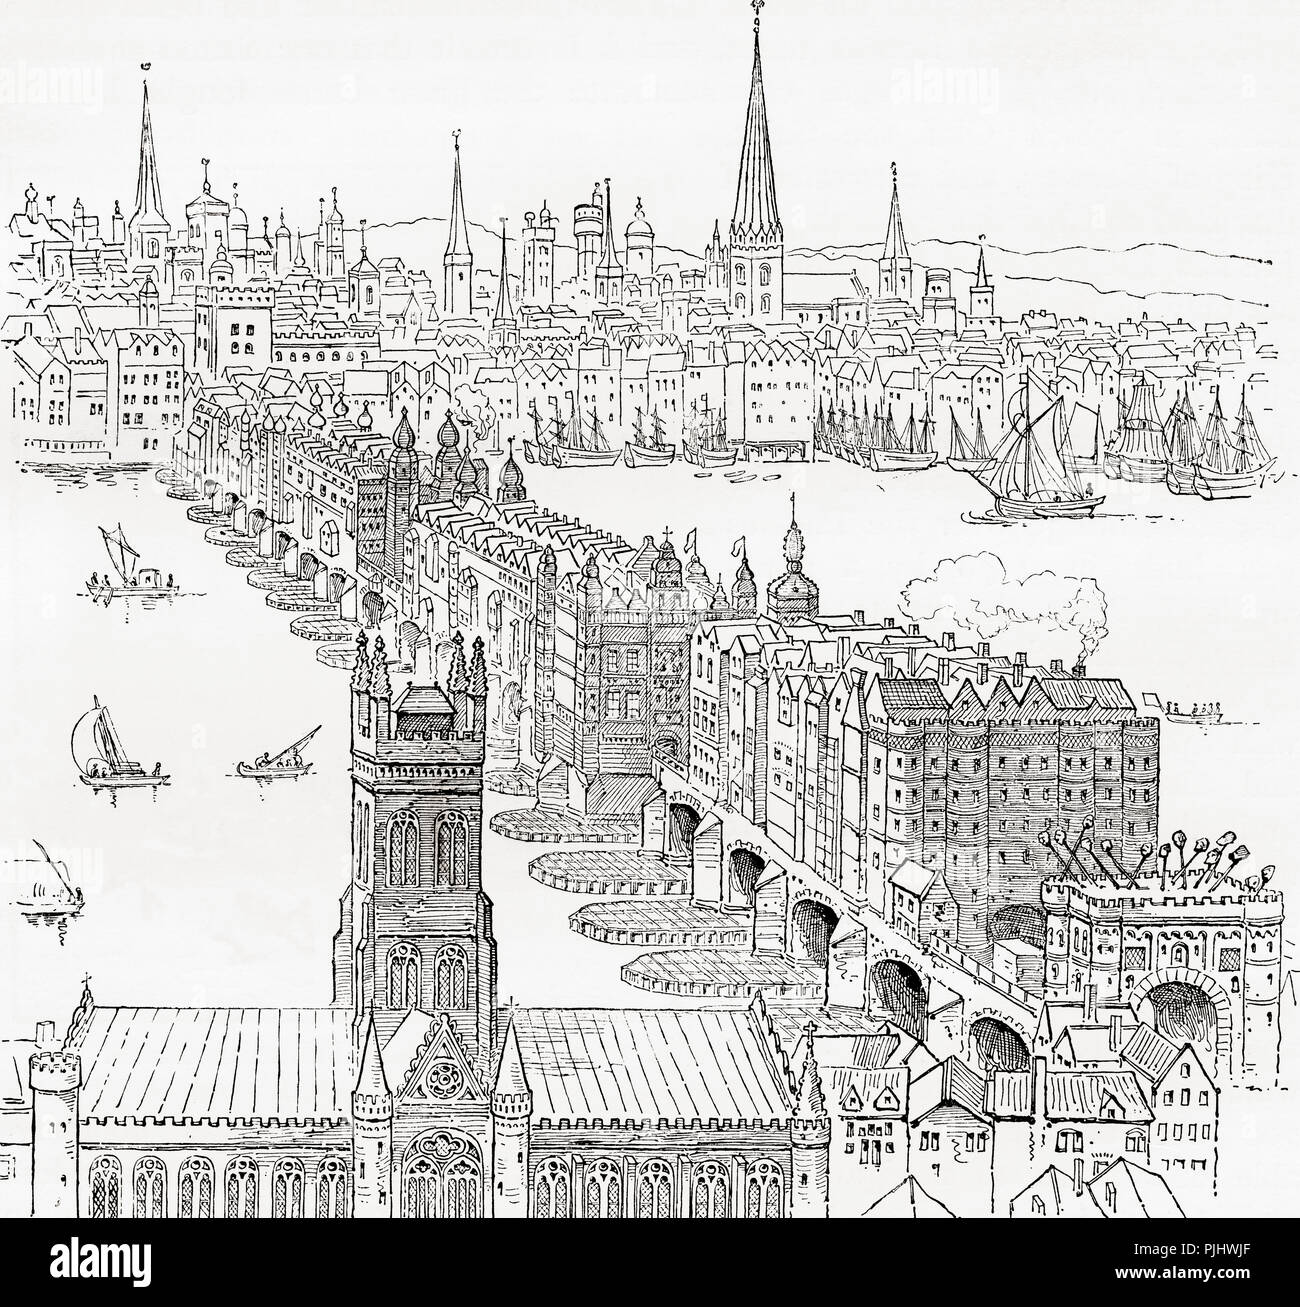 Alte London Bridge, (1209 - 1831) London, England im 19. Jahrhundert. Der stachelwalze Staats ausgeführt Kriminelle können über das Southwark torhaus gesehen werden. Von London Bilder, veröffentlicht 1890. Stockfoto